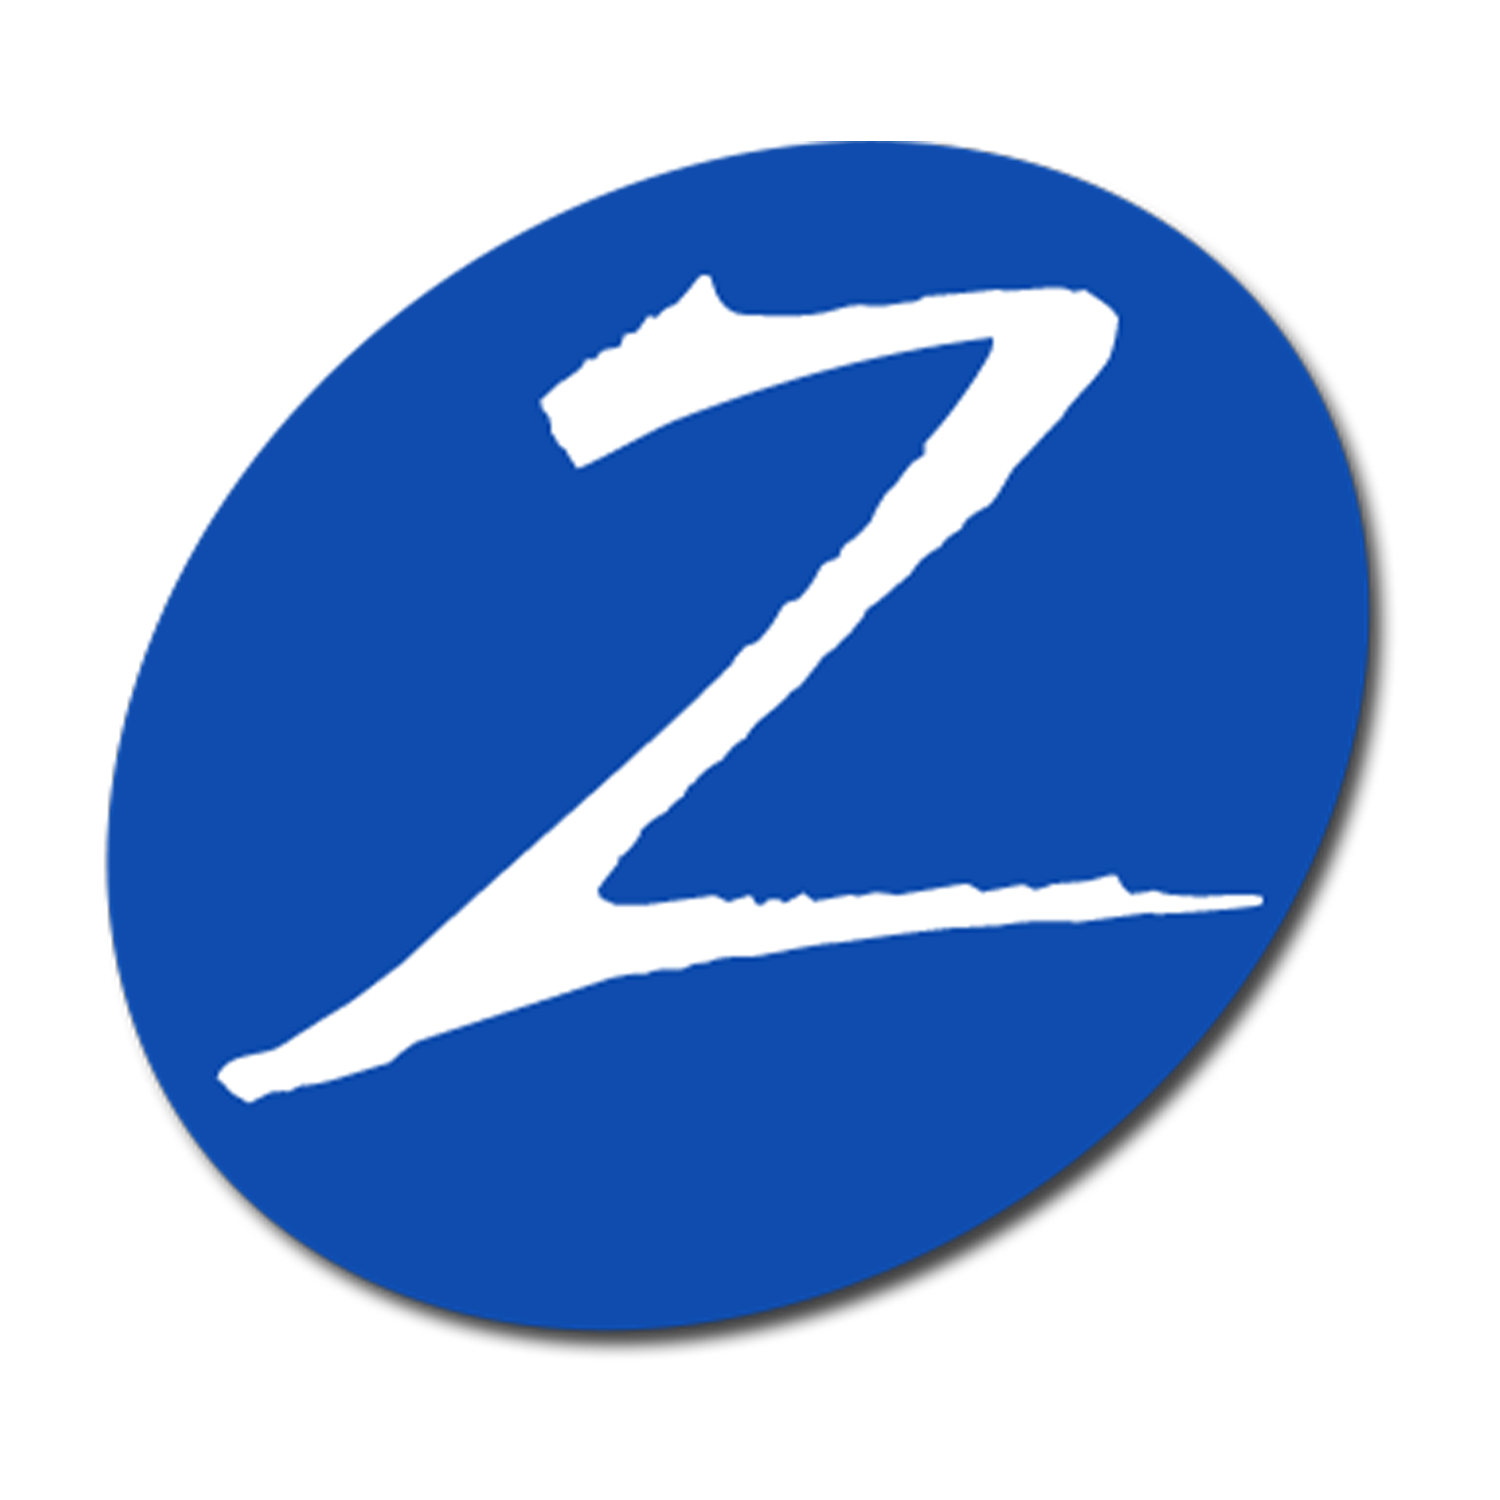 www.zetronix.com